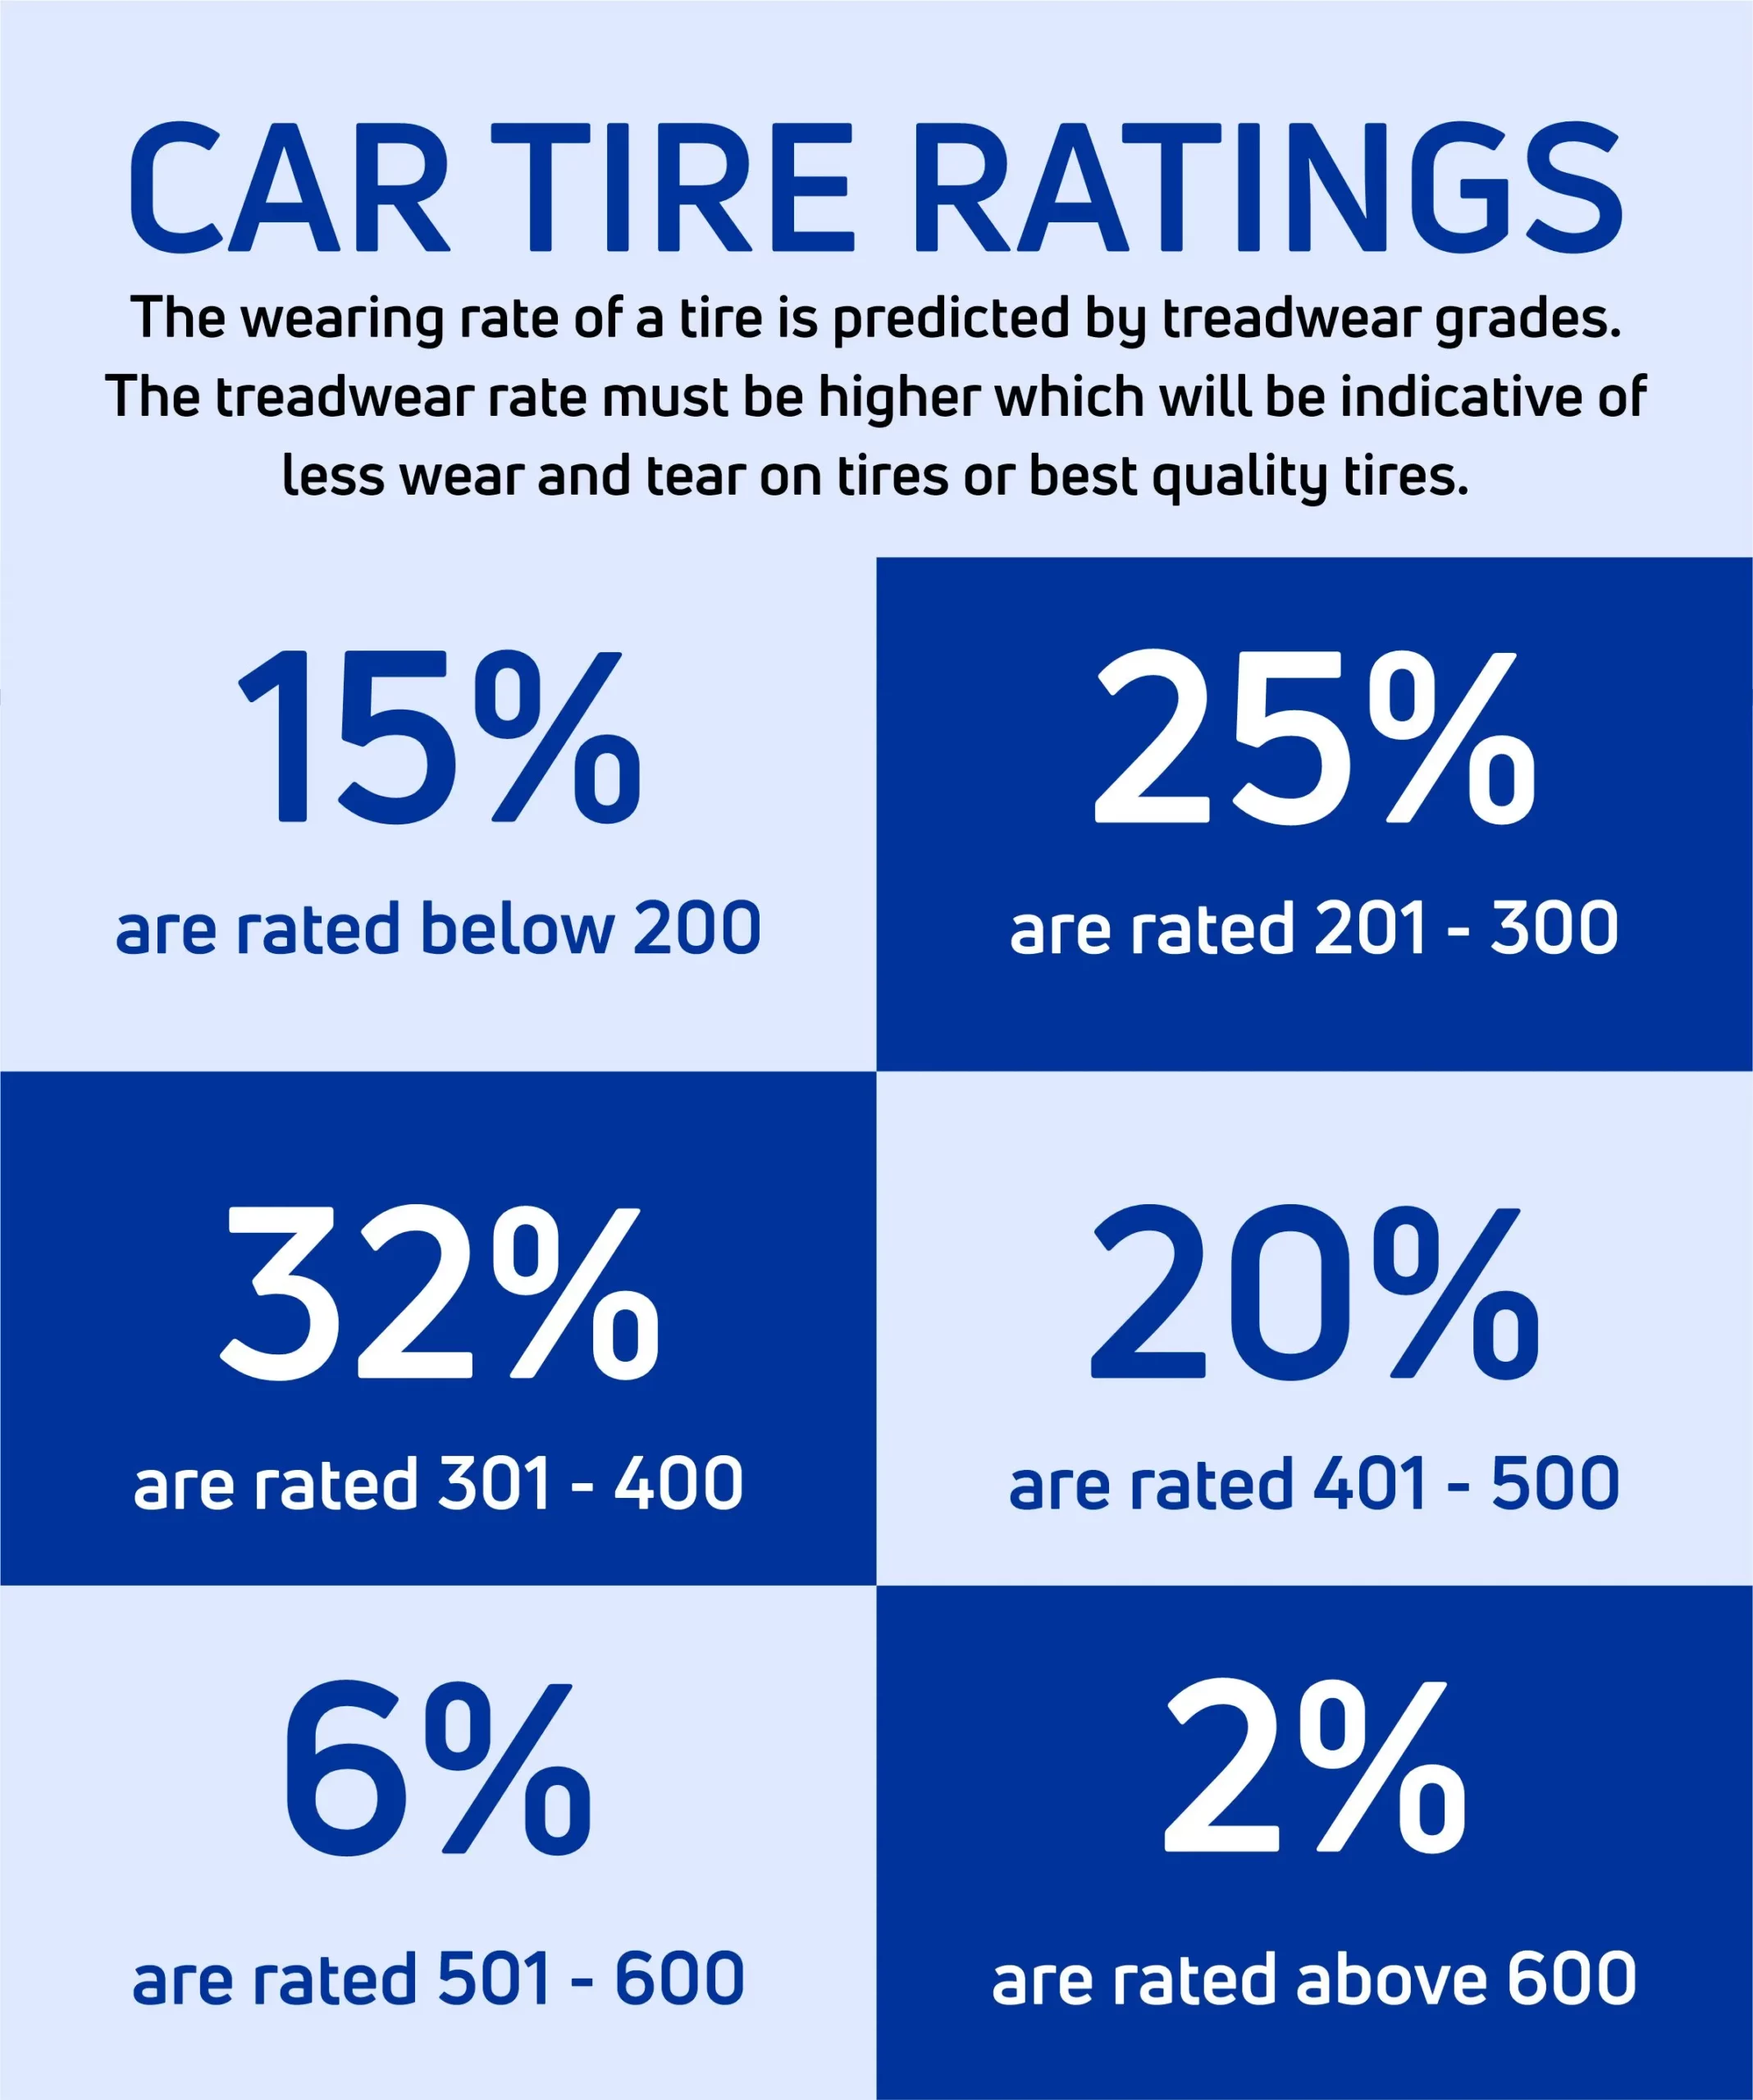 Car tire ratings